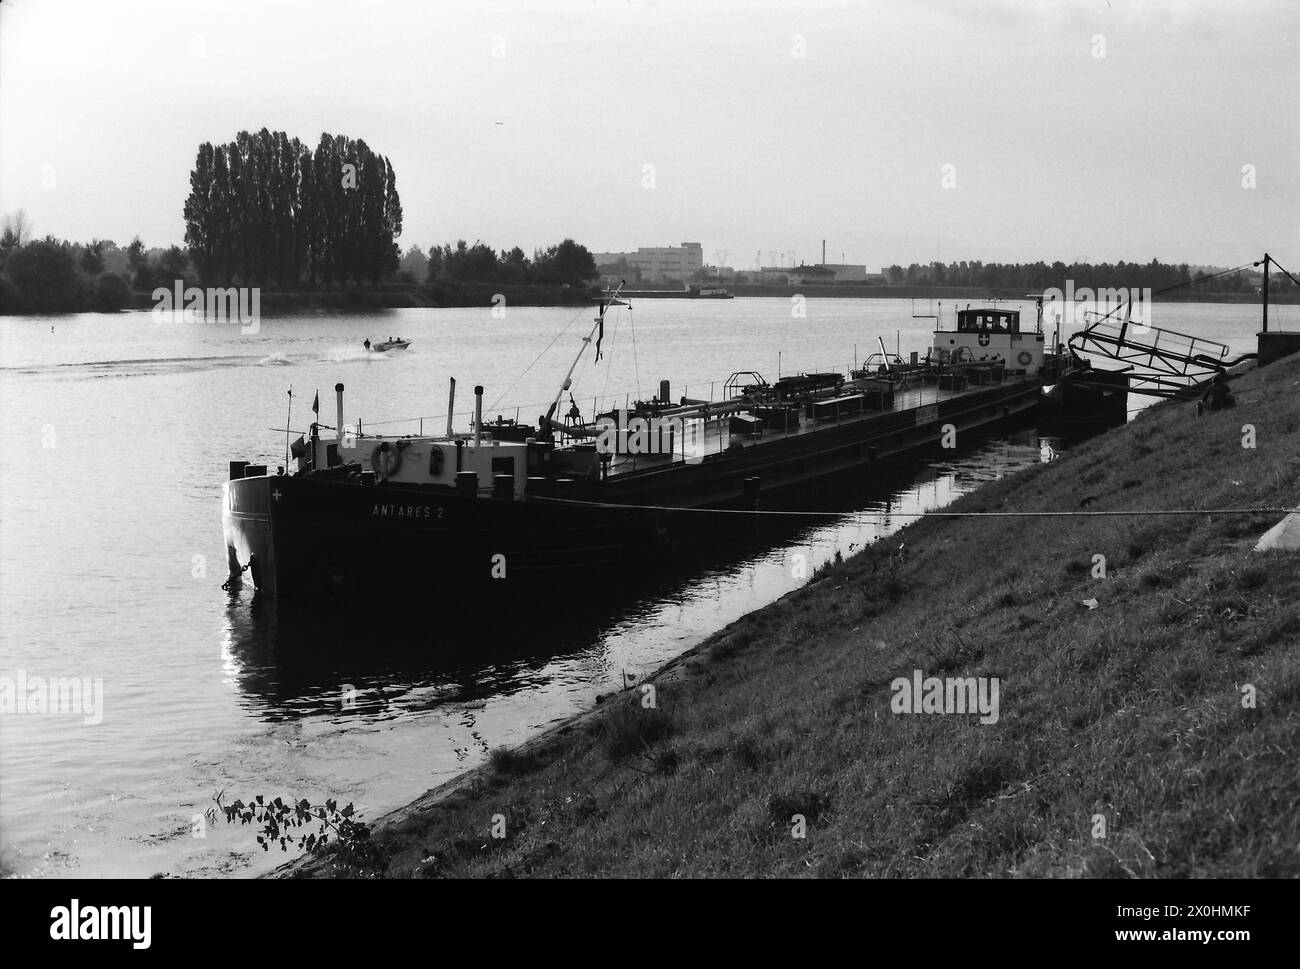 Das Foto wurde bei einem Besuch in Säckingen aufgenommen und zeigt den Rhein mit einem Lastkahn, wahrscheinlich zwischen Rheinfelden und Basel. [Automatisierte Übersetzung] Stockfoto